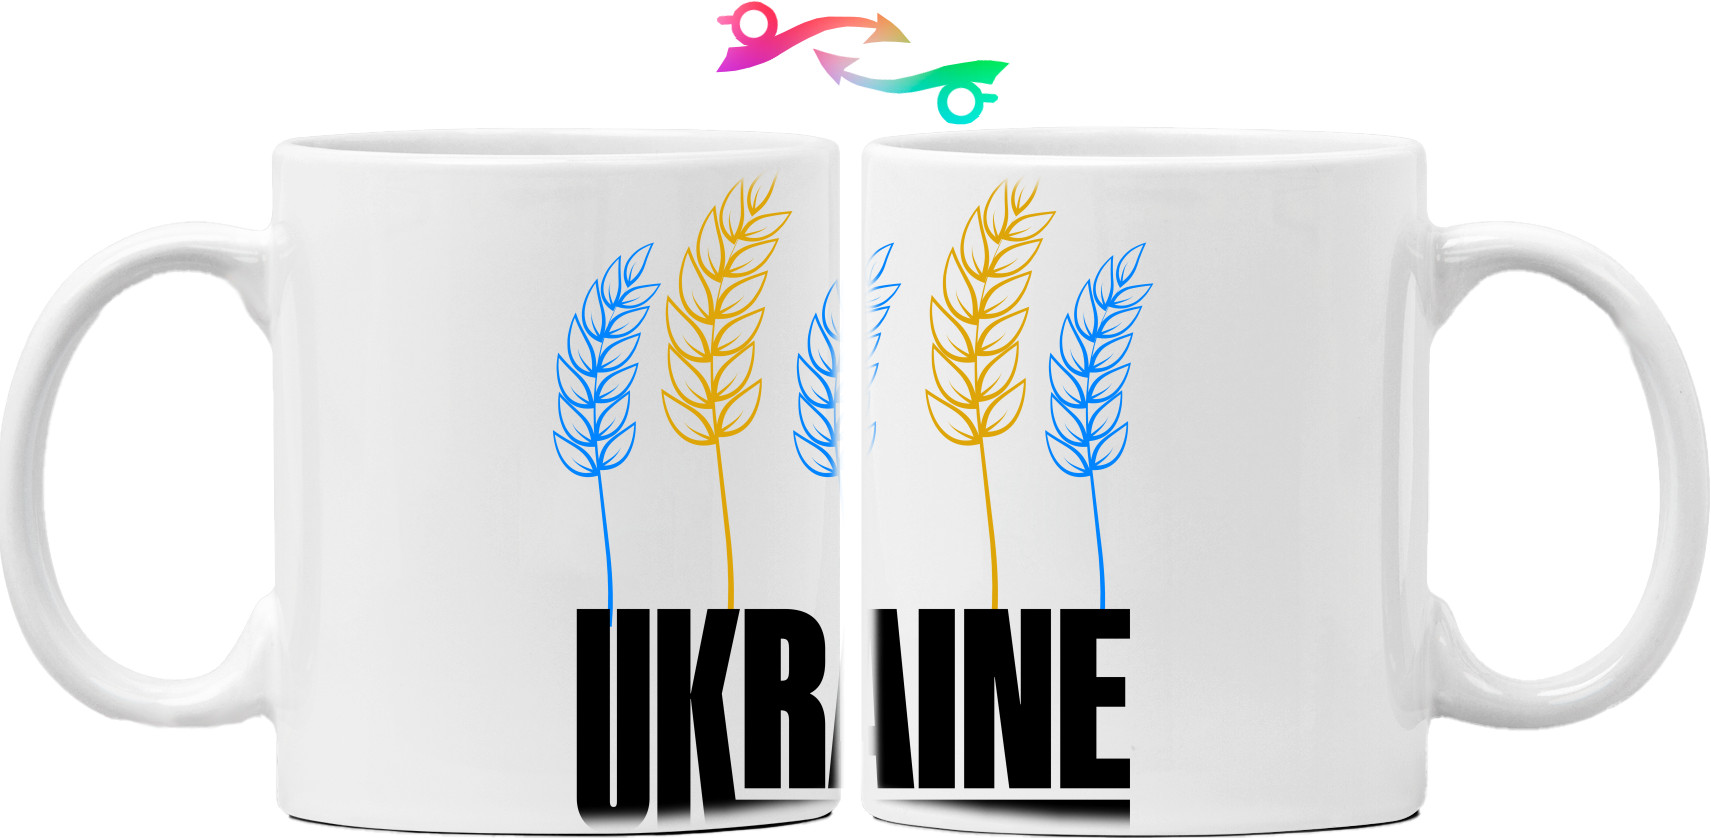 Українська пшениця